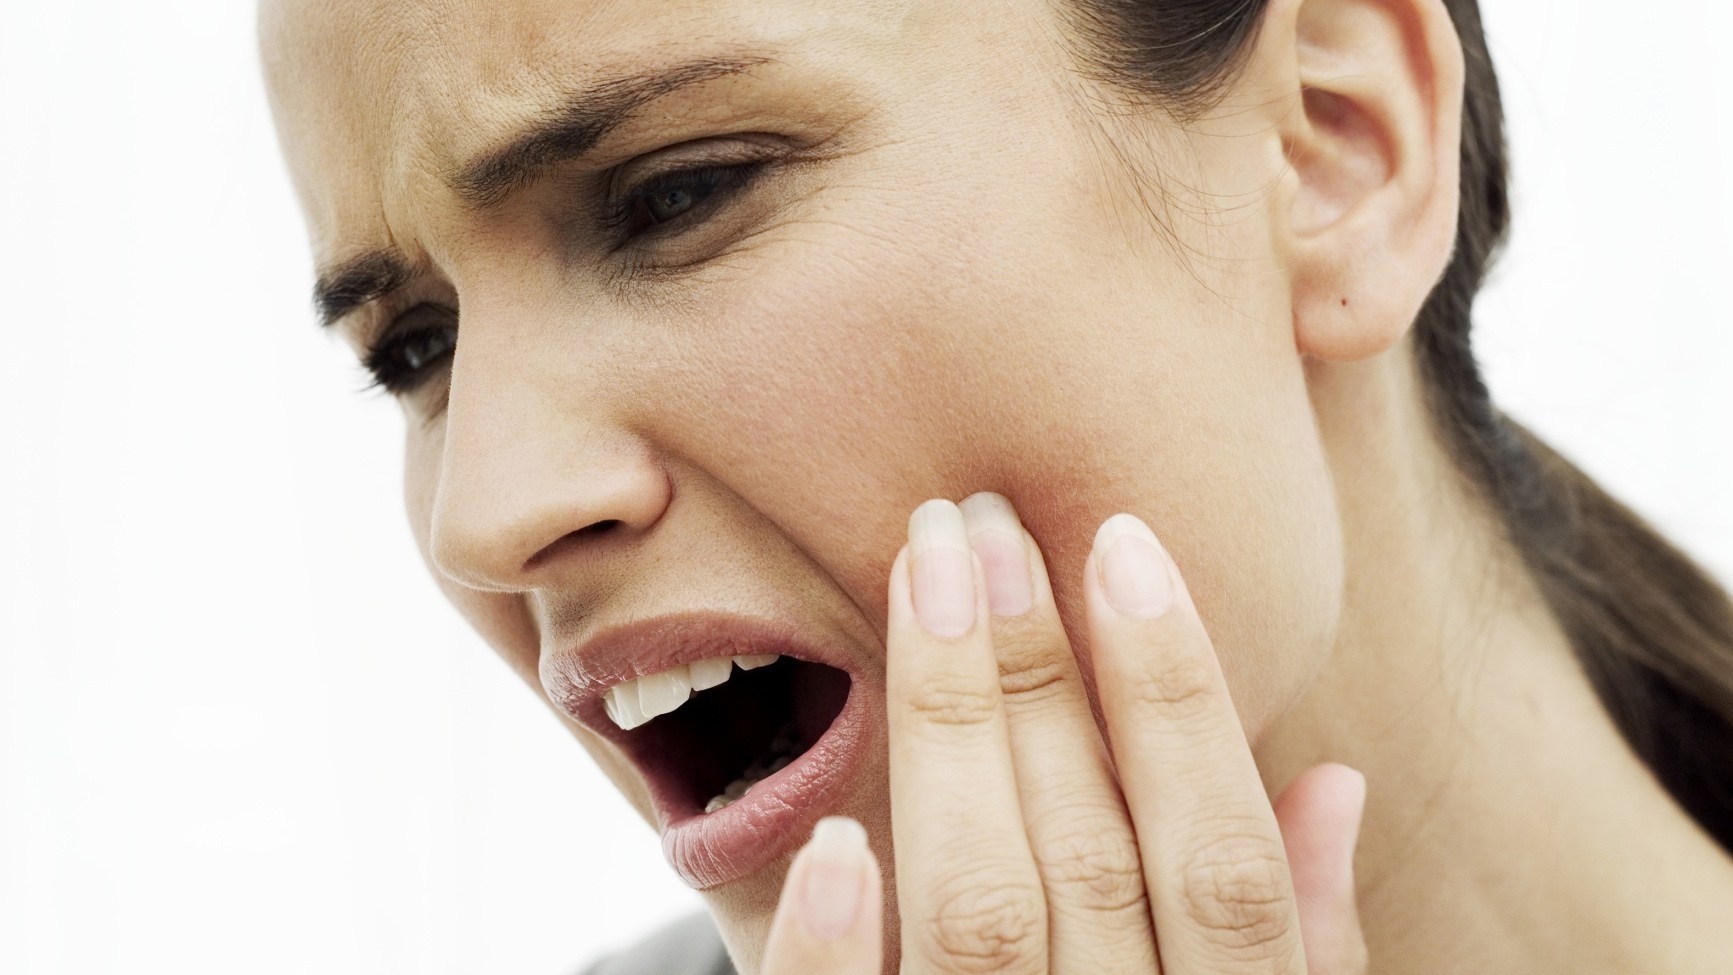 Có cách nào khác để điều trị nhức răng bằng bấm huyệt mà không dùng huyệt đại nghinh?
